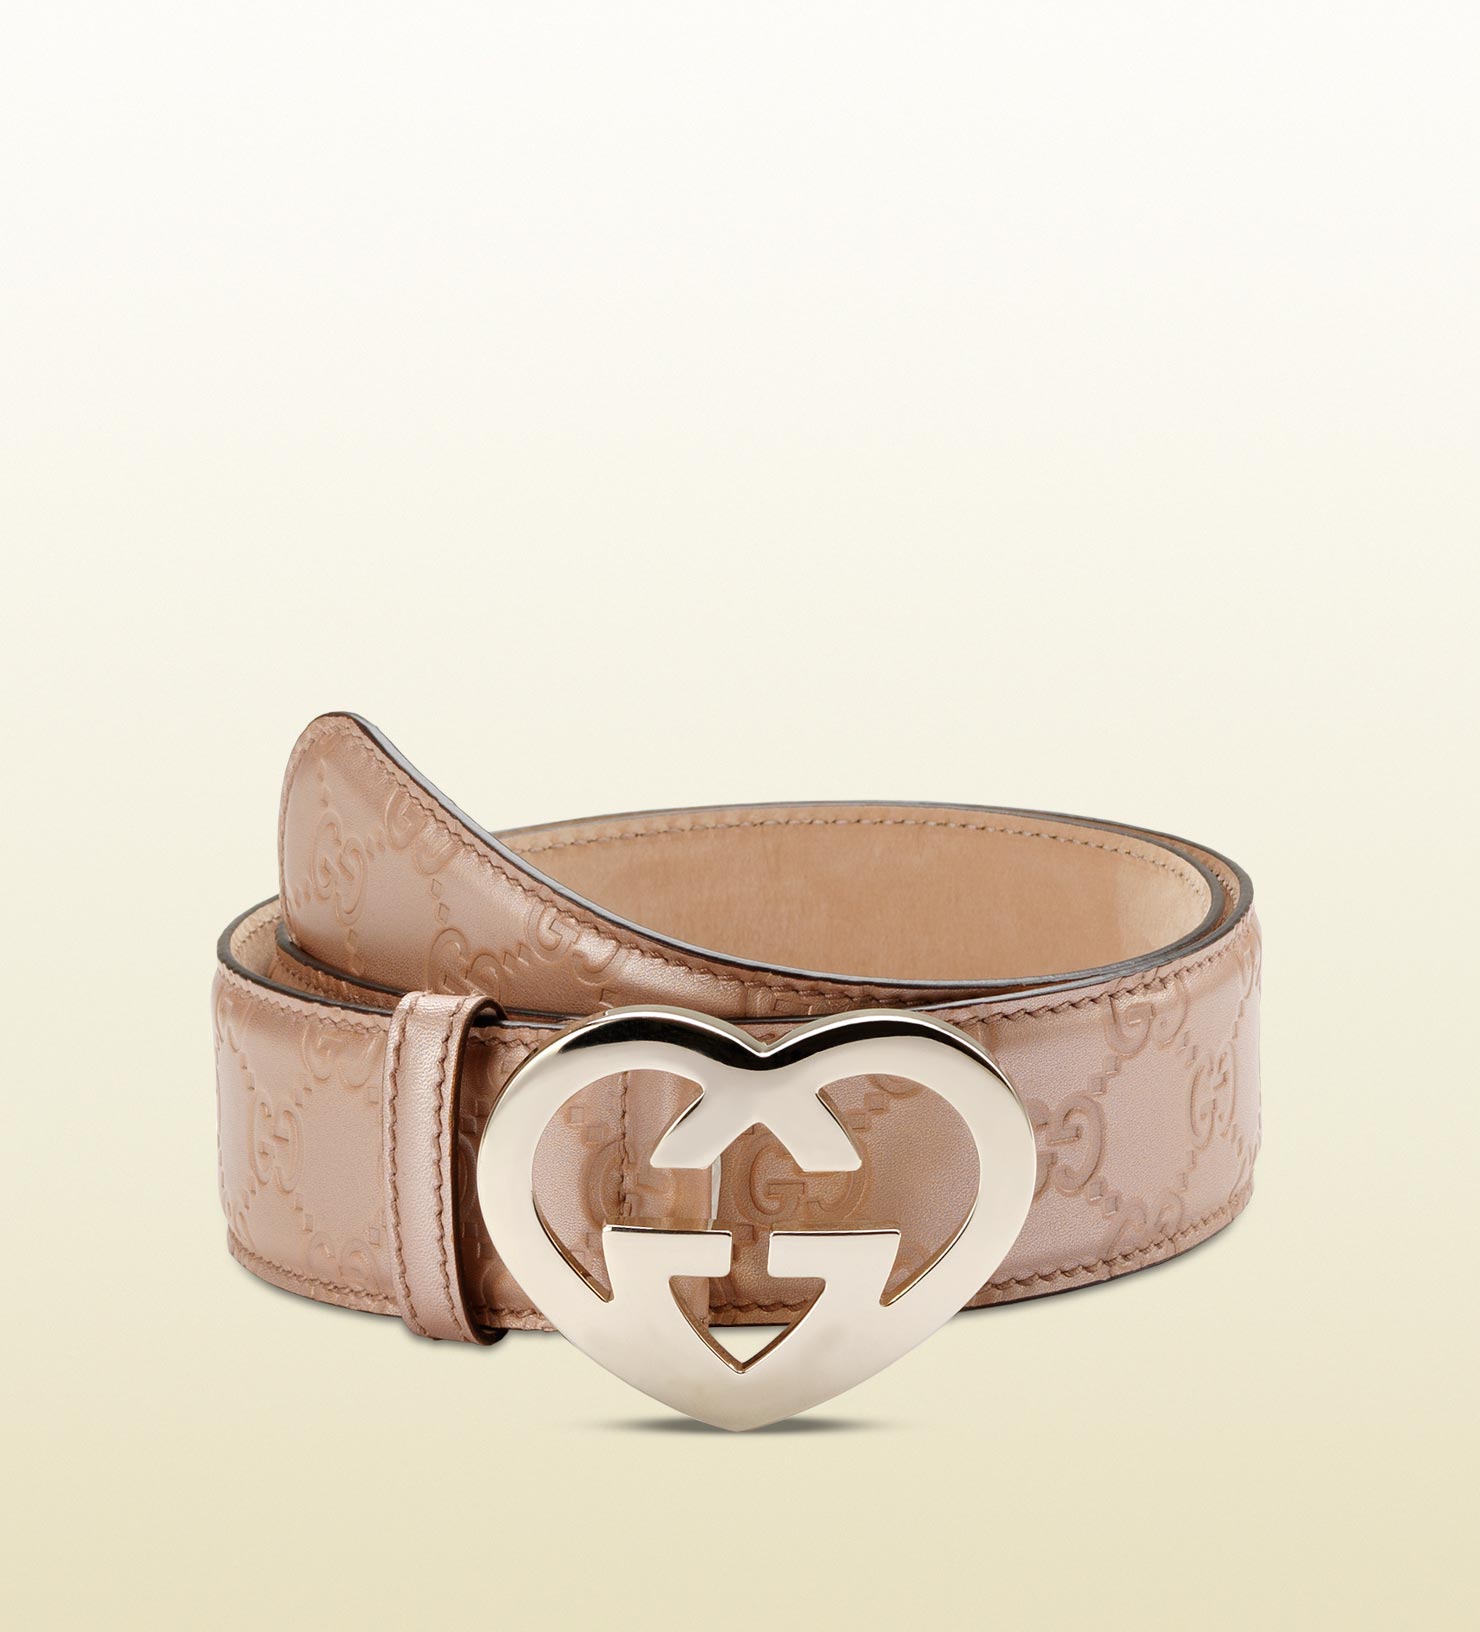 heart shaped gucci belt